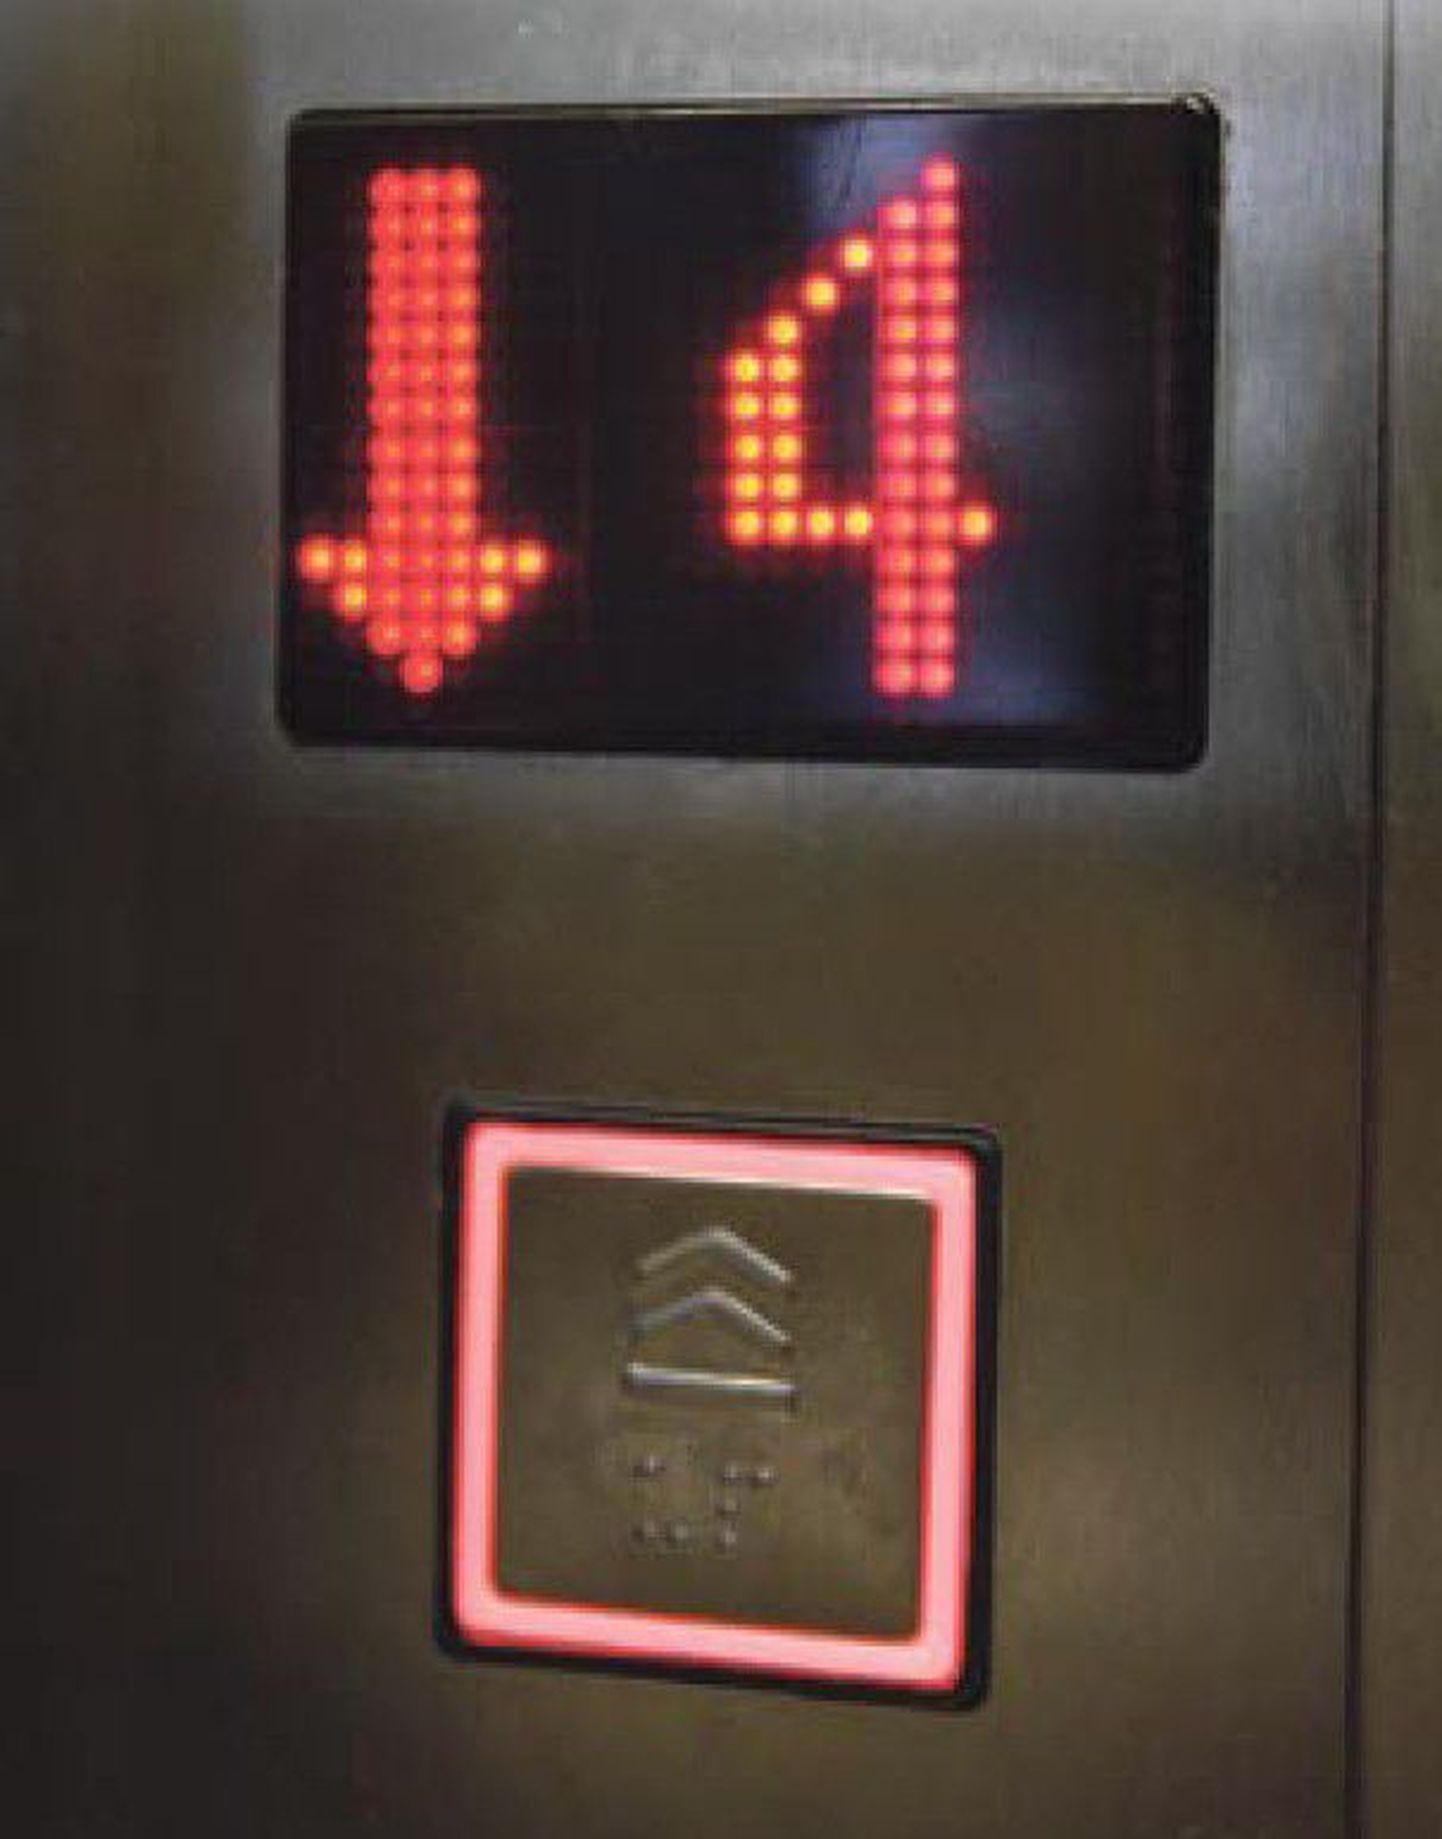 Uuemad liftid vajavad hooldust harvem, osa vanadest liftidest vajab aga põhjalikku renoveerimist. Kuna lifti moderniseerimine on kulukas, pakub riik ka võimalusi liftiomanike toetamiseks.